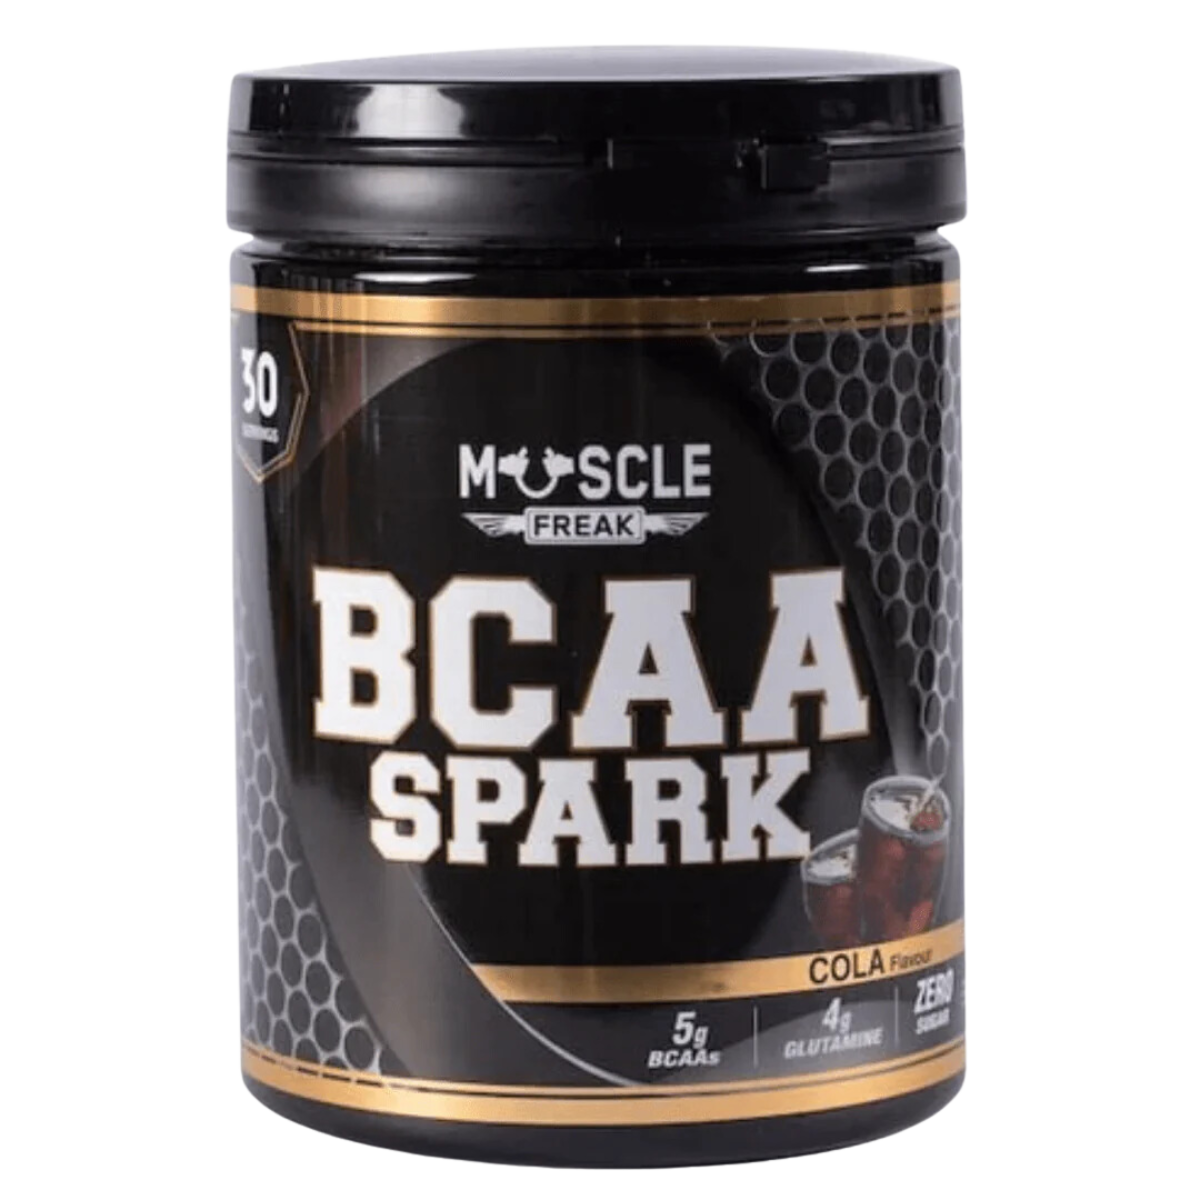 Muscle Freak BCAA Spark